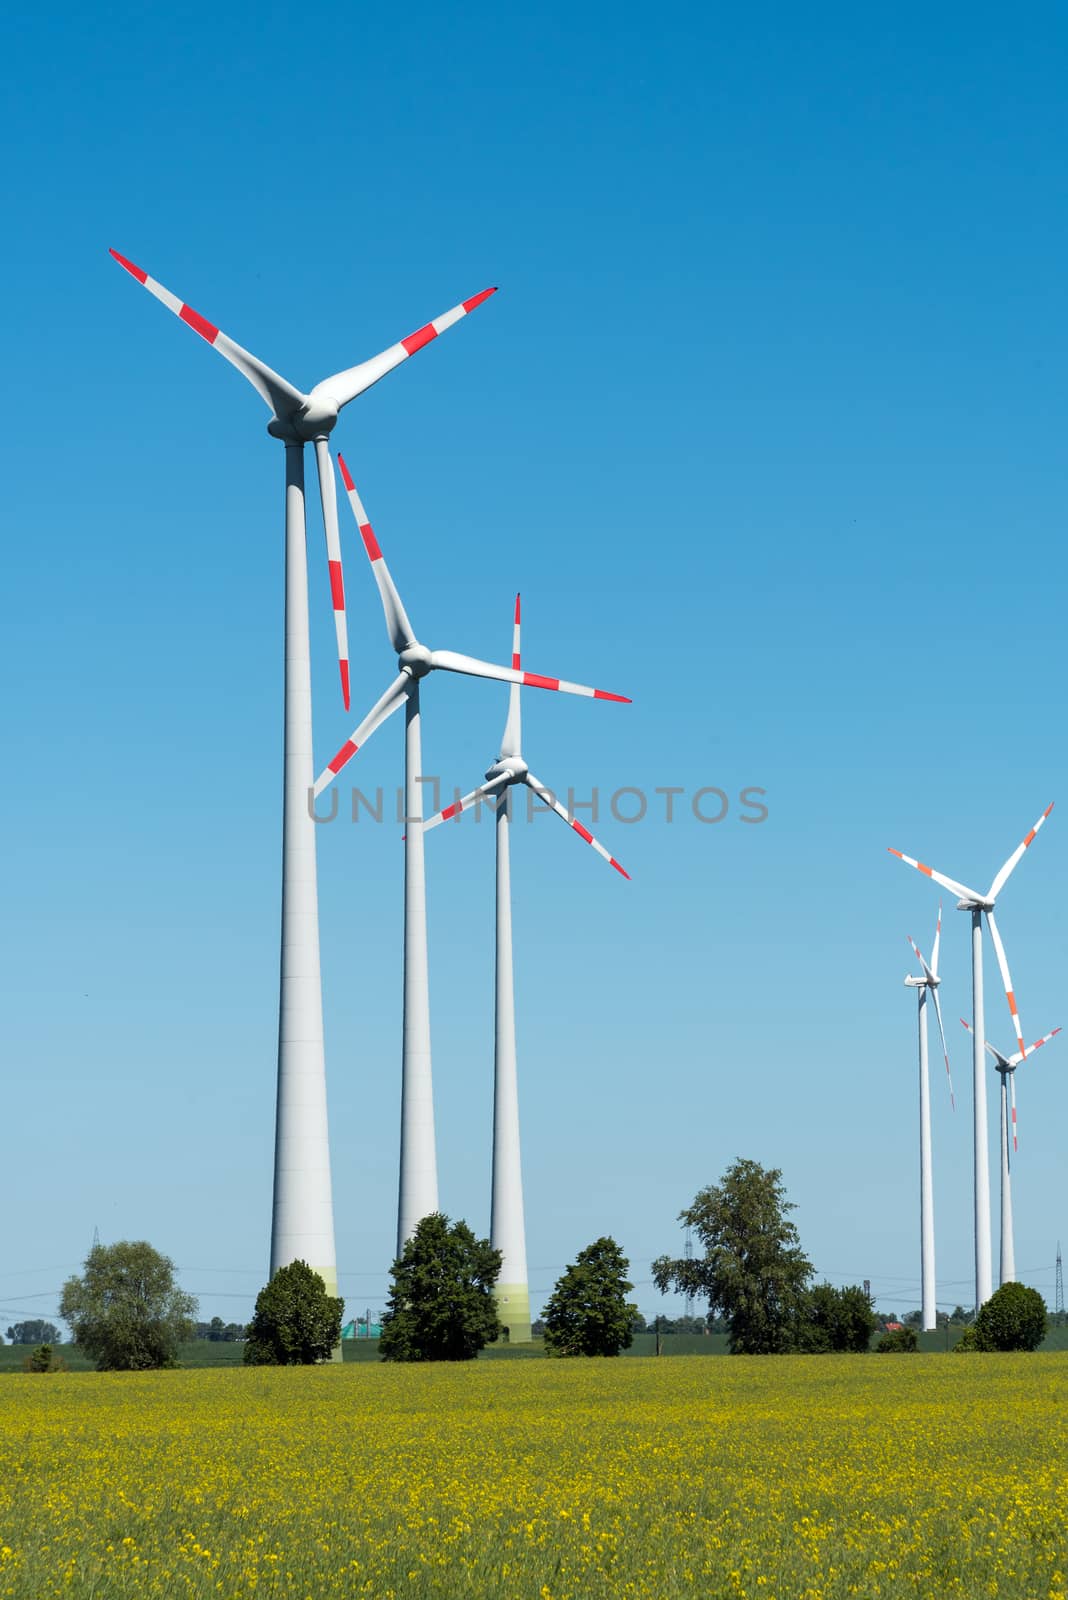 Wind wheels in the fields seen in rural Germany